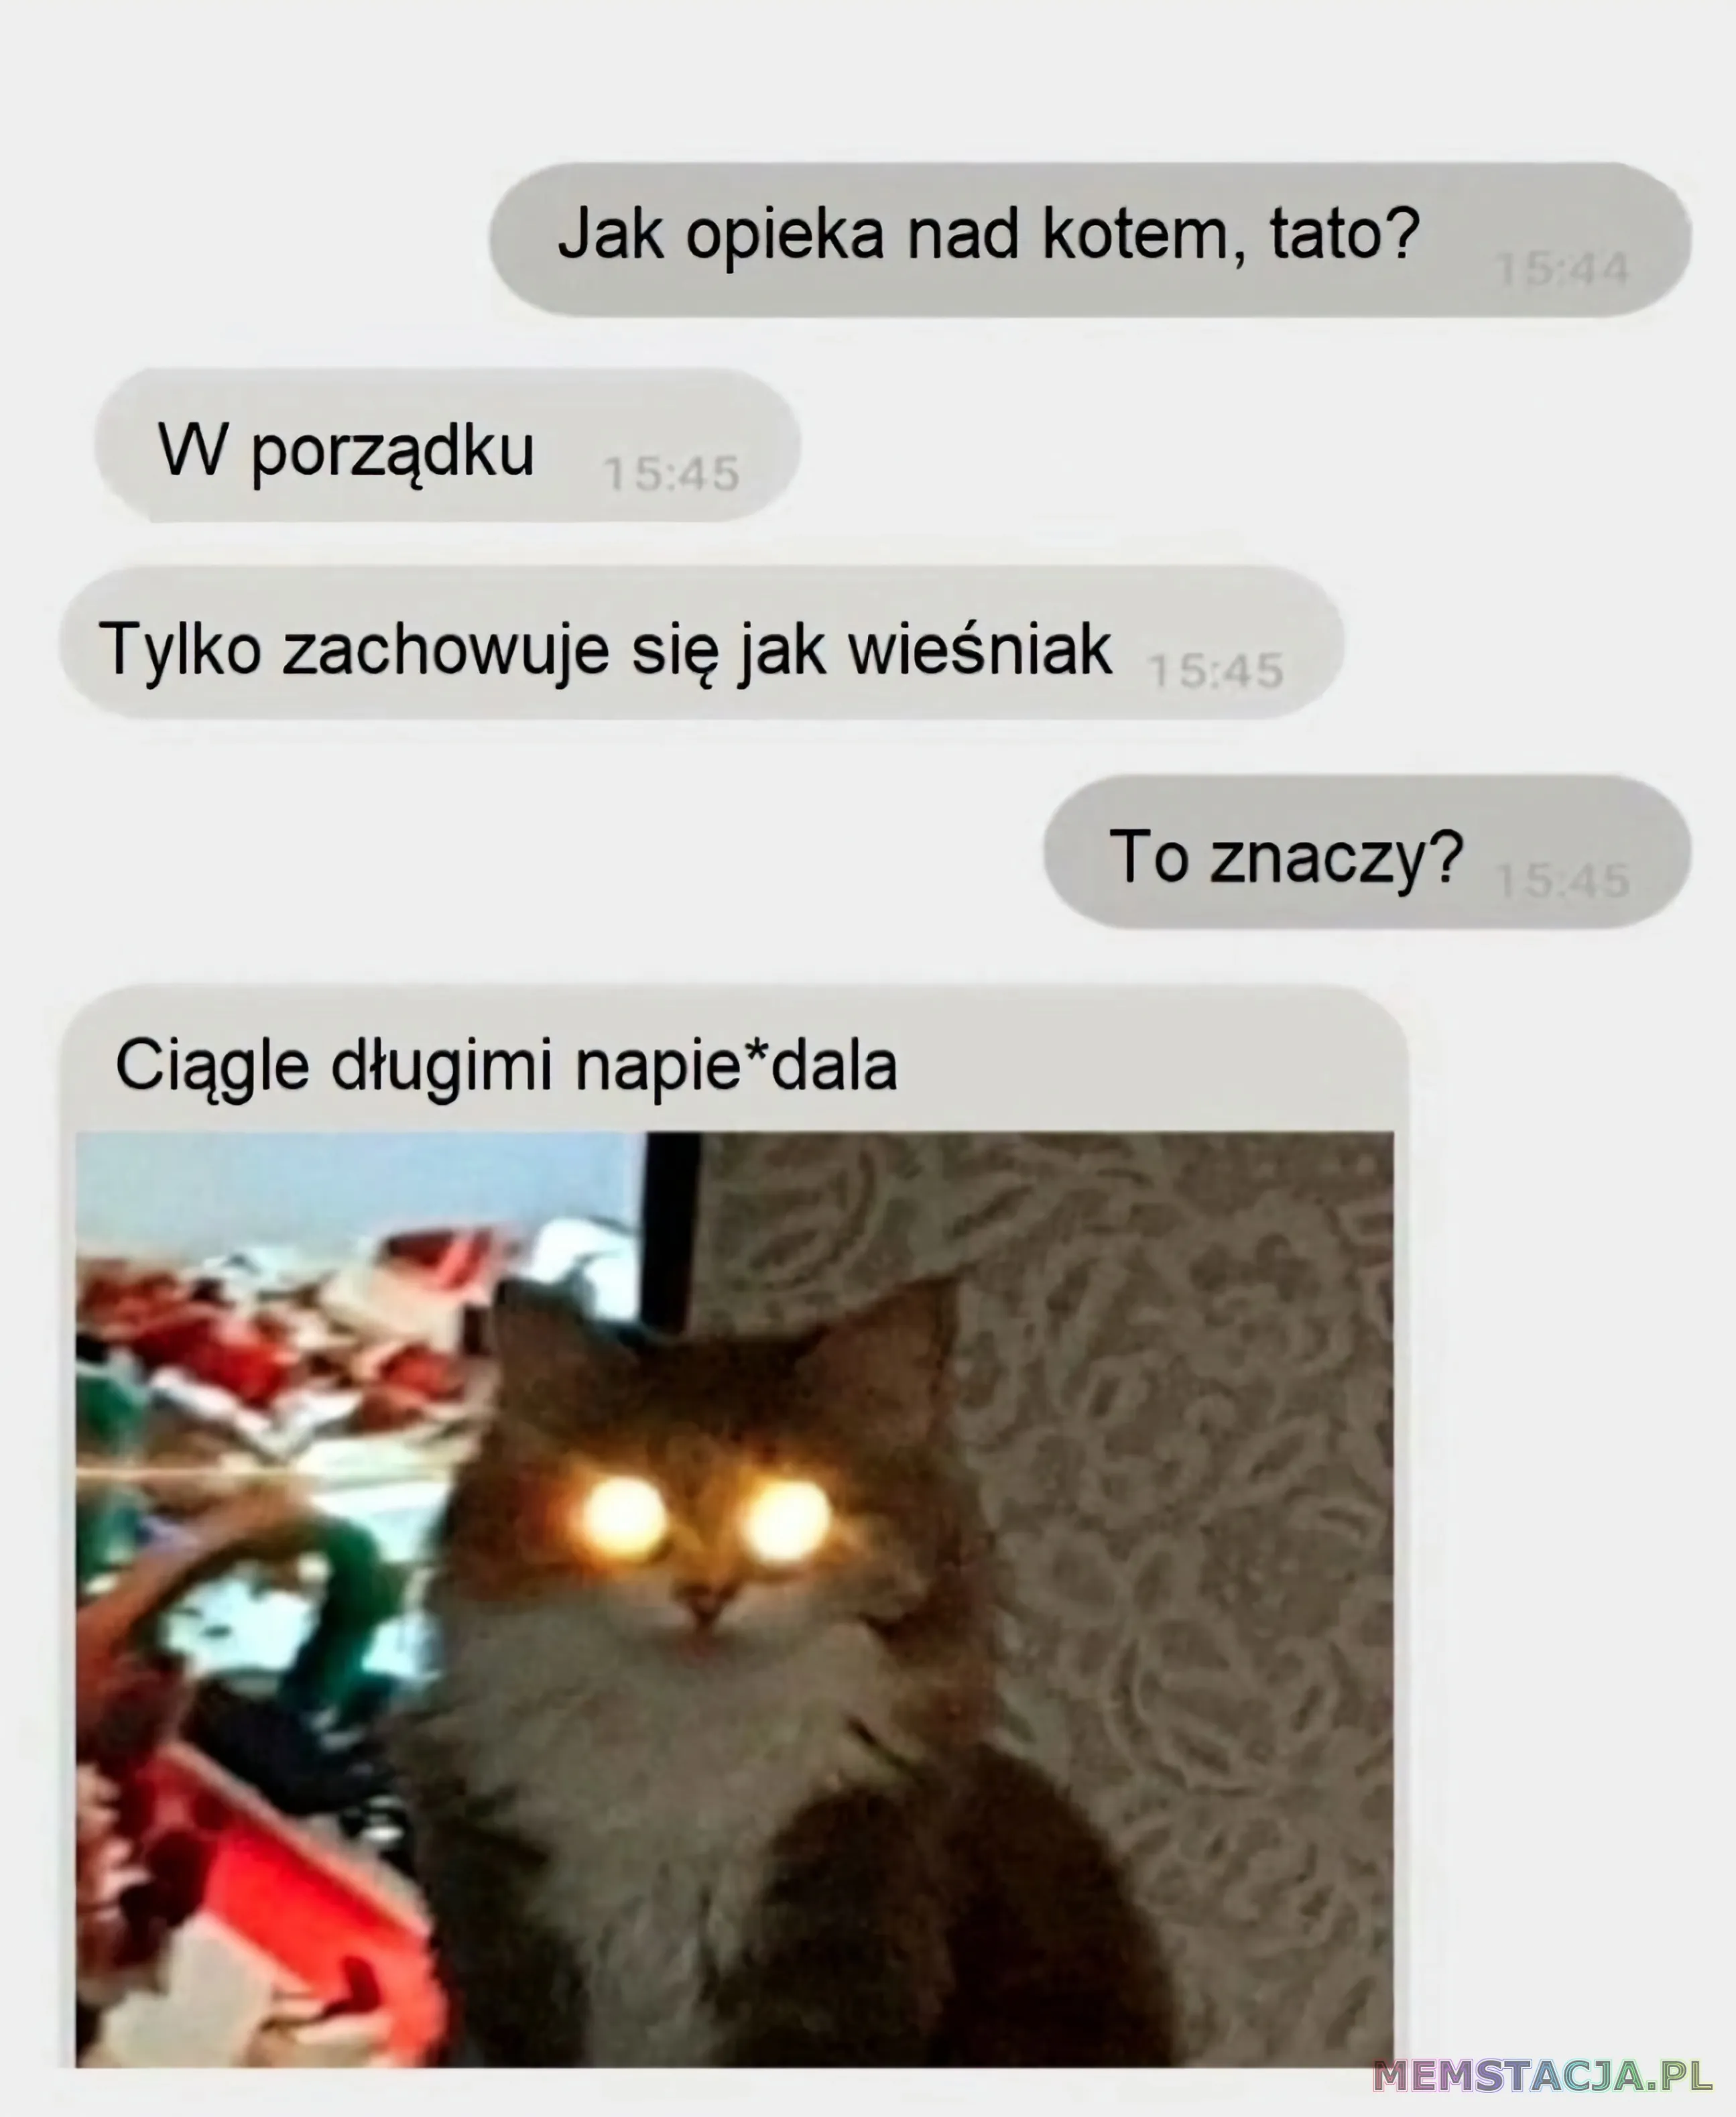 Mem przedstawiający konwersację na messengerze: '- Jak opieka nad kotem, tato? - W porzątku. Tylko zachowuje się jak wieśniak. - To znaczy? - Ciągle długimi napie*dala'